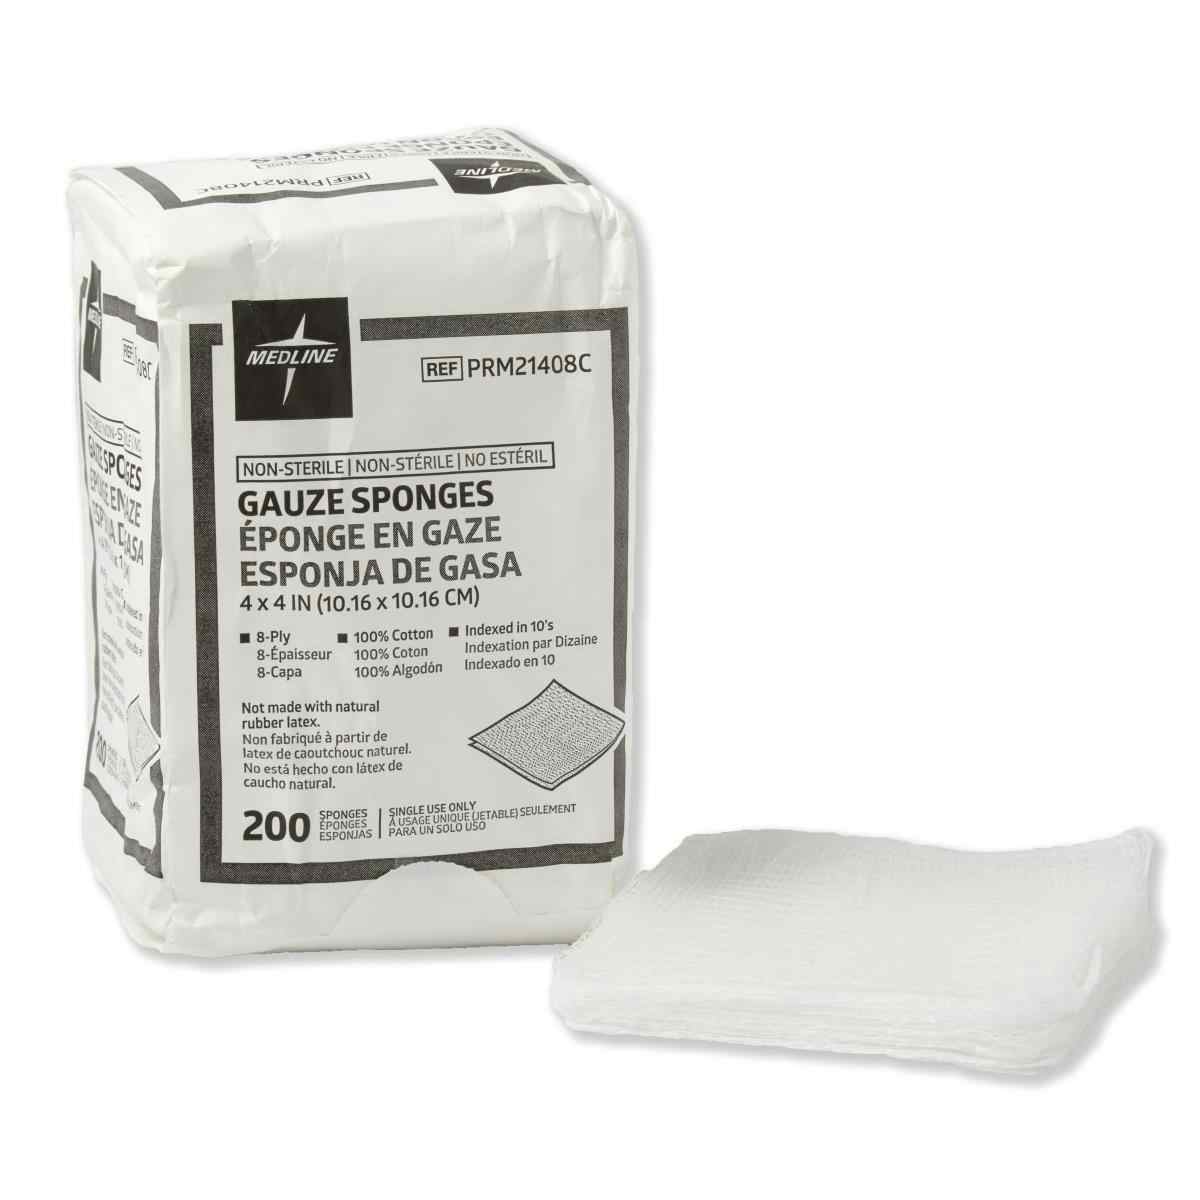 Medline Non-Sterile Woven Cotton 8-Ply Gauze Sponges, PRM21408C, 4" X 4" - Case of 4000